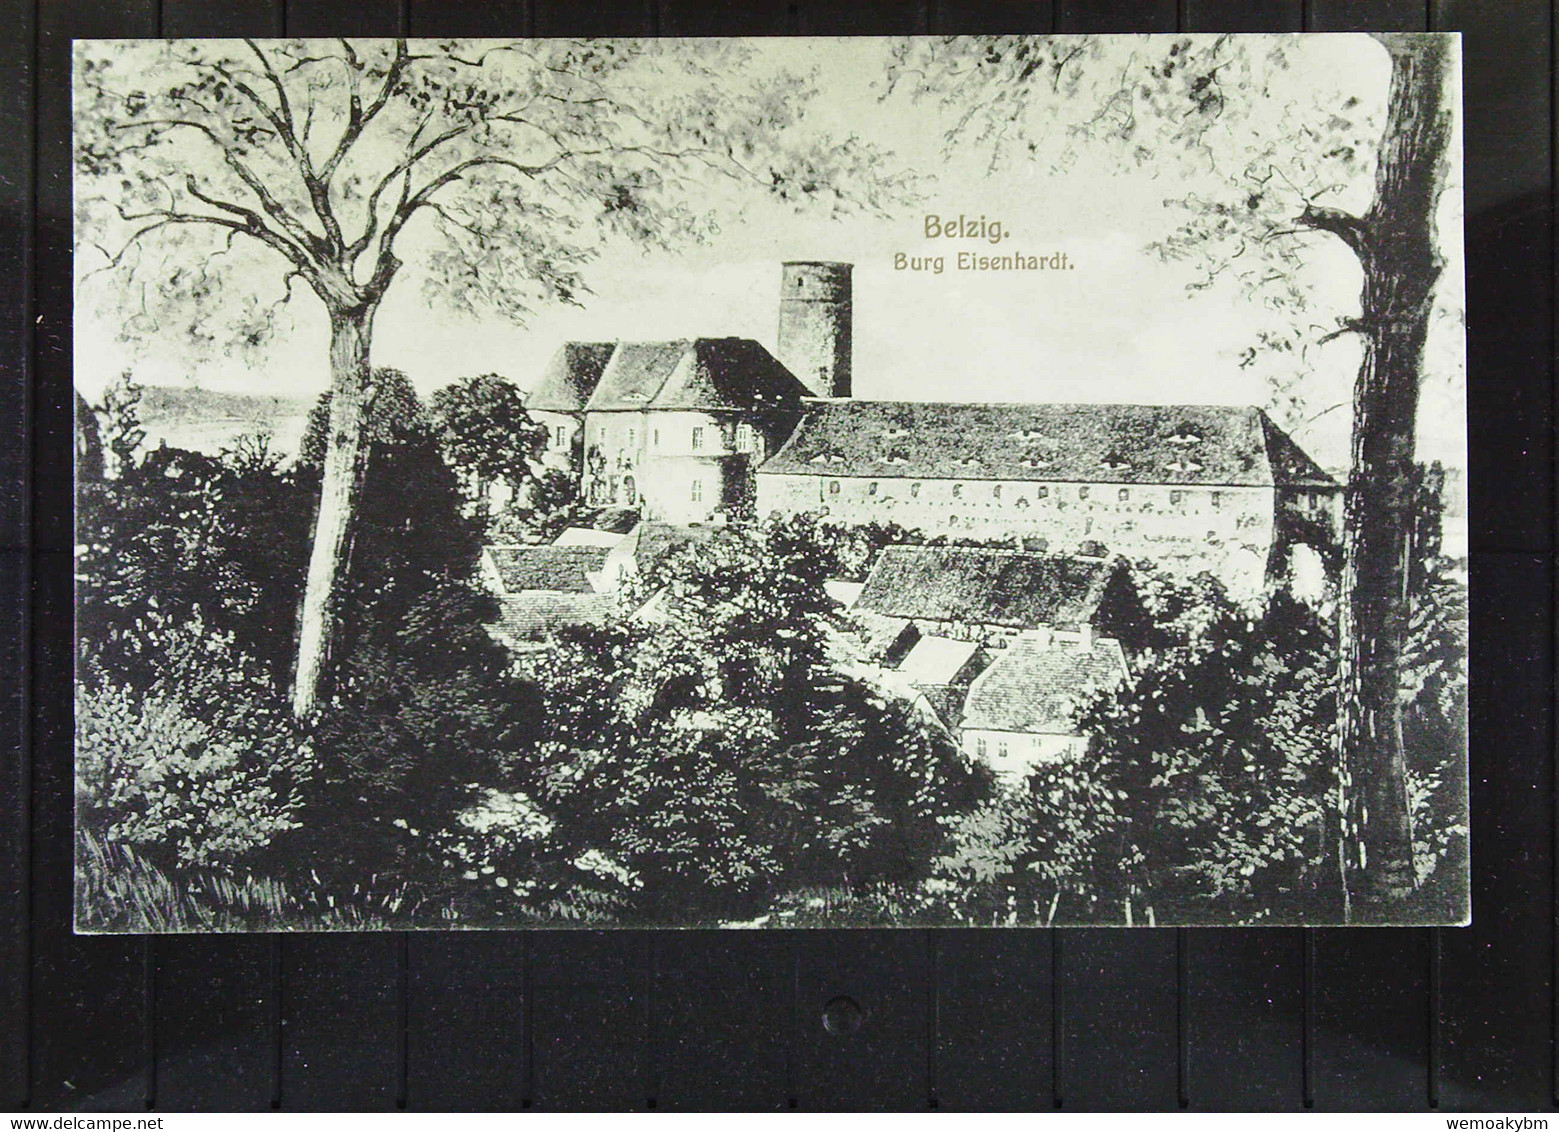 DR: Ansichtskarte Von Belzig Mit Burg Eisenhardt Vom 26.11.15 Mit 5 Pf Germania Nach Potsdam Knr: 85 - Belzig